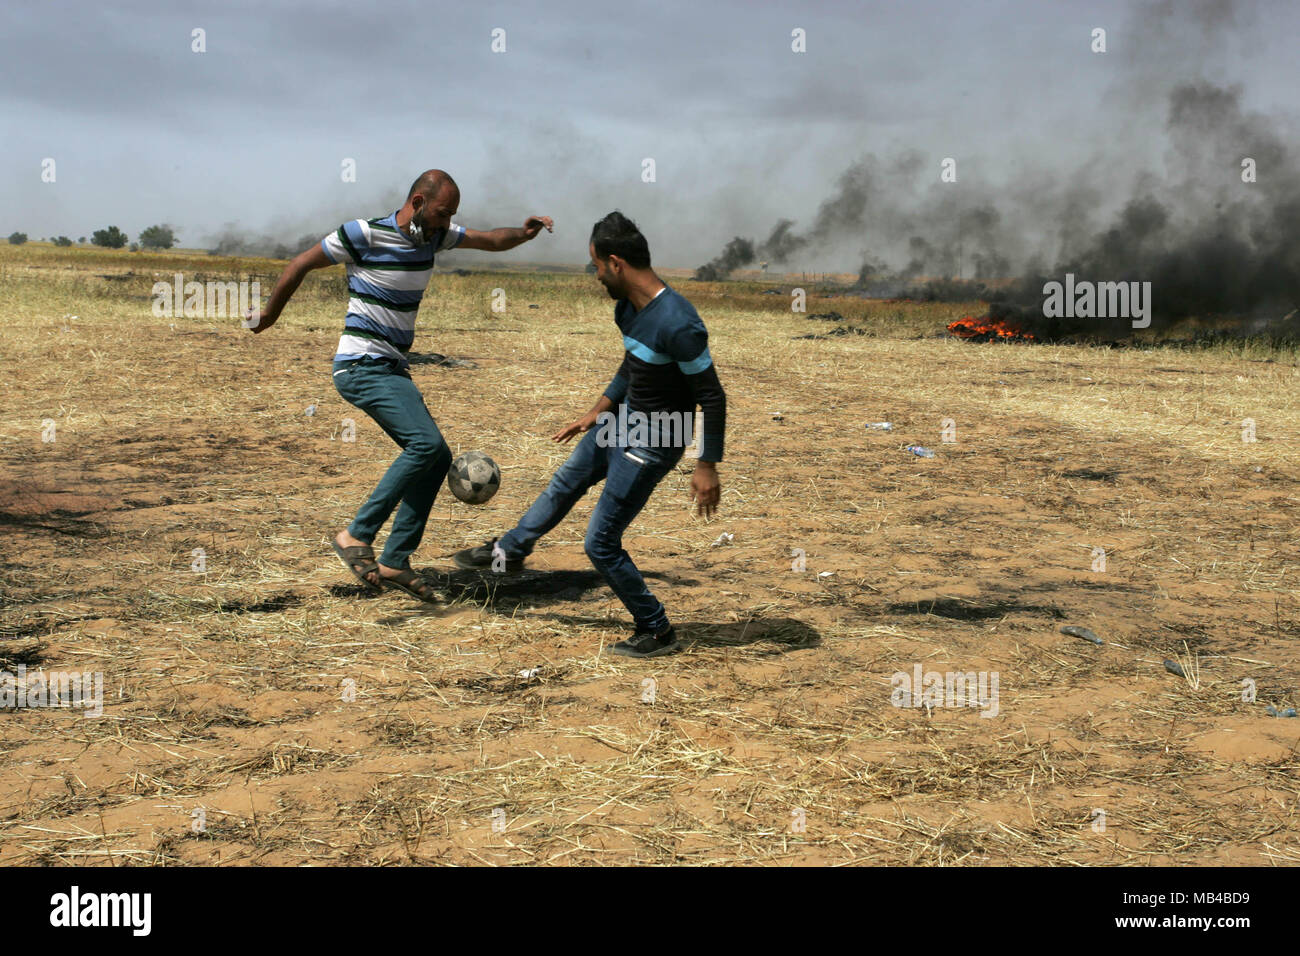 Gaza, Palästina. 6 Apr, 2018. Palästinensische Jugendliche spielen Fußball, während der Auseinandersetzungen mit der israelischen Sicherheitskräfte auf der Gaza-Israel Grenze nach einem Protest, östlich von Khan Yunis im südlichen Gazastreifen am 6. April 2018. Auseinandersetzungen ausgebrochen auf der Gaza-Israel Grenze eine Woche nach ähnlichen Demonstrationen zu Gewalt in die israelische Gewalt getötet 19 Palästinenser, die blutigste Tag seit einem Krieg 2014 führte. Credit: Erwachen Foto Agentur/Alamy leben Nachrichten Stockfoto